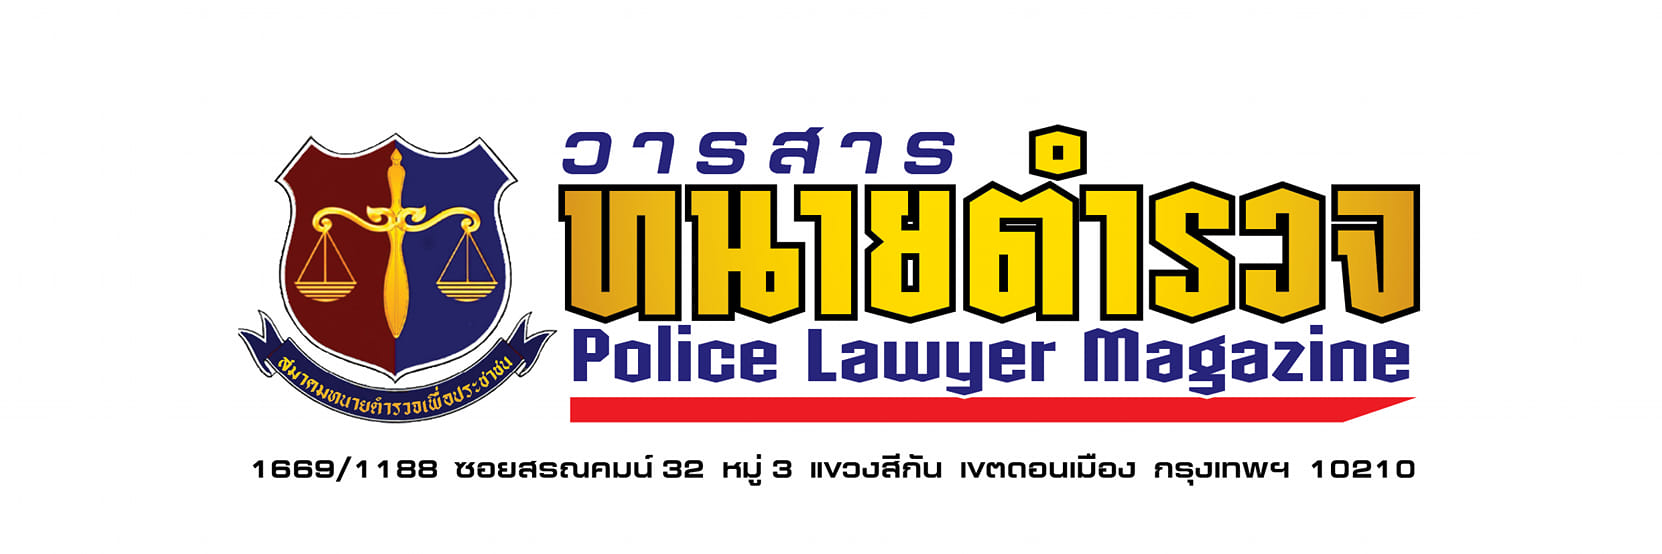 วารสาร-ทนายตำรวจ-Police-Lawyer-Magazine